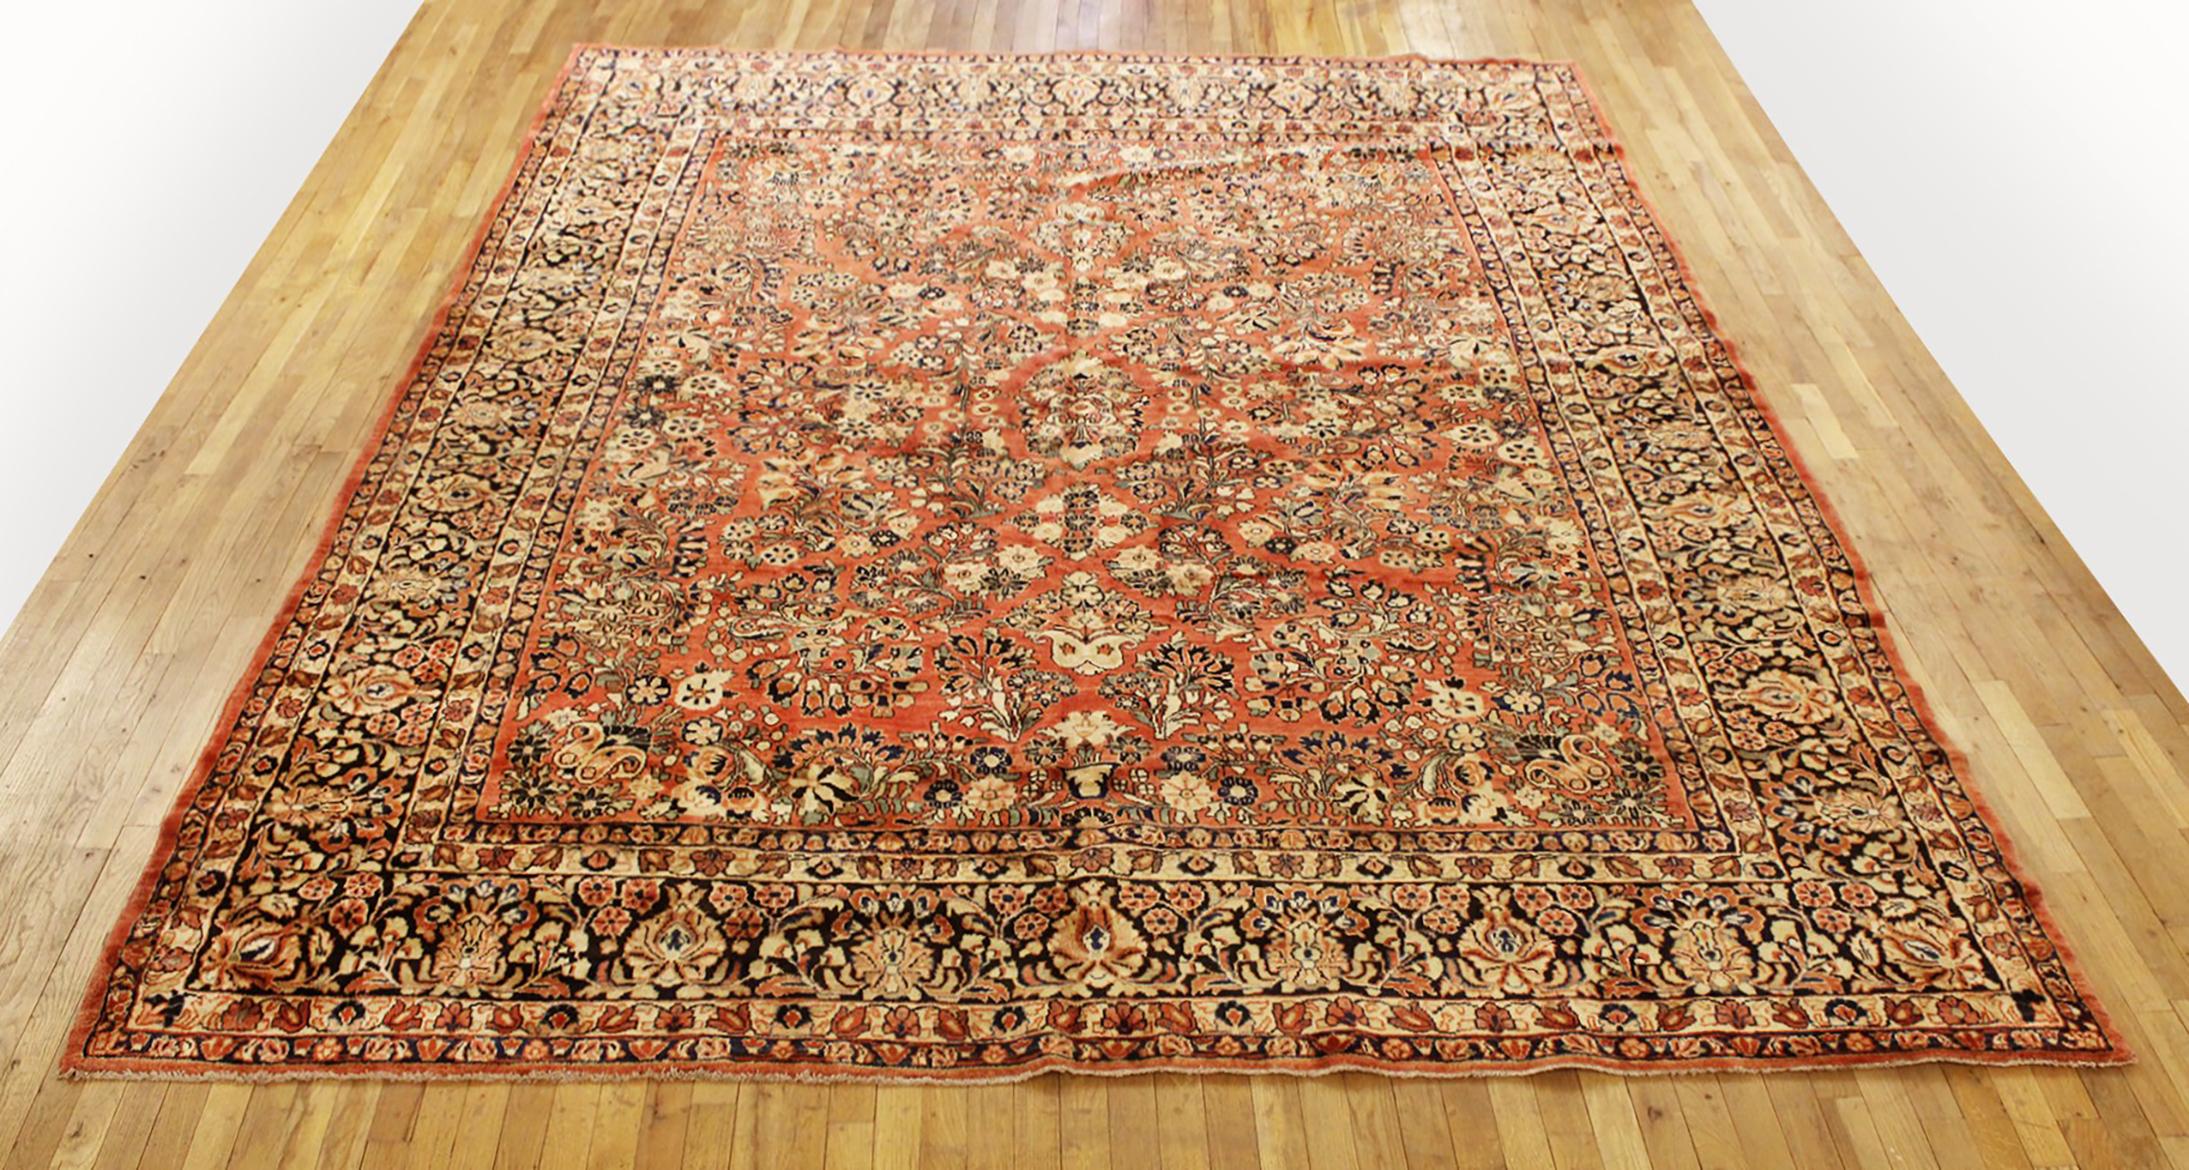 Antique Persian Sarouk Oriental Rug, circa 1920, Room size

An antique Persian Sarouk oriental rug, size 11'4